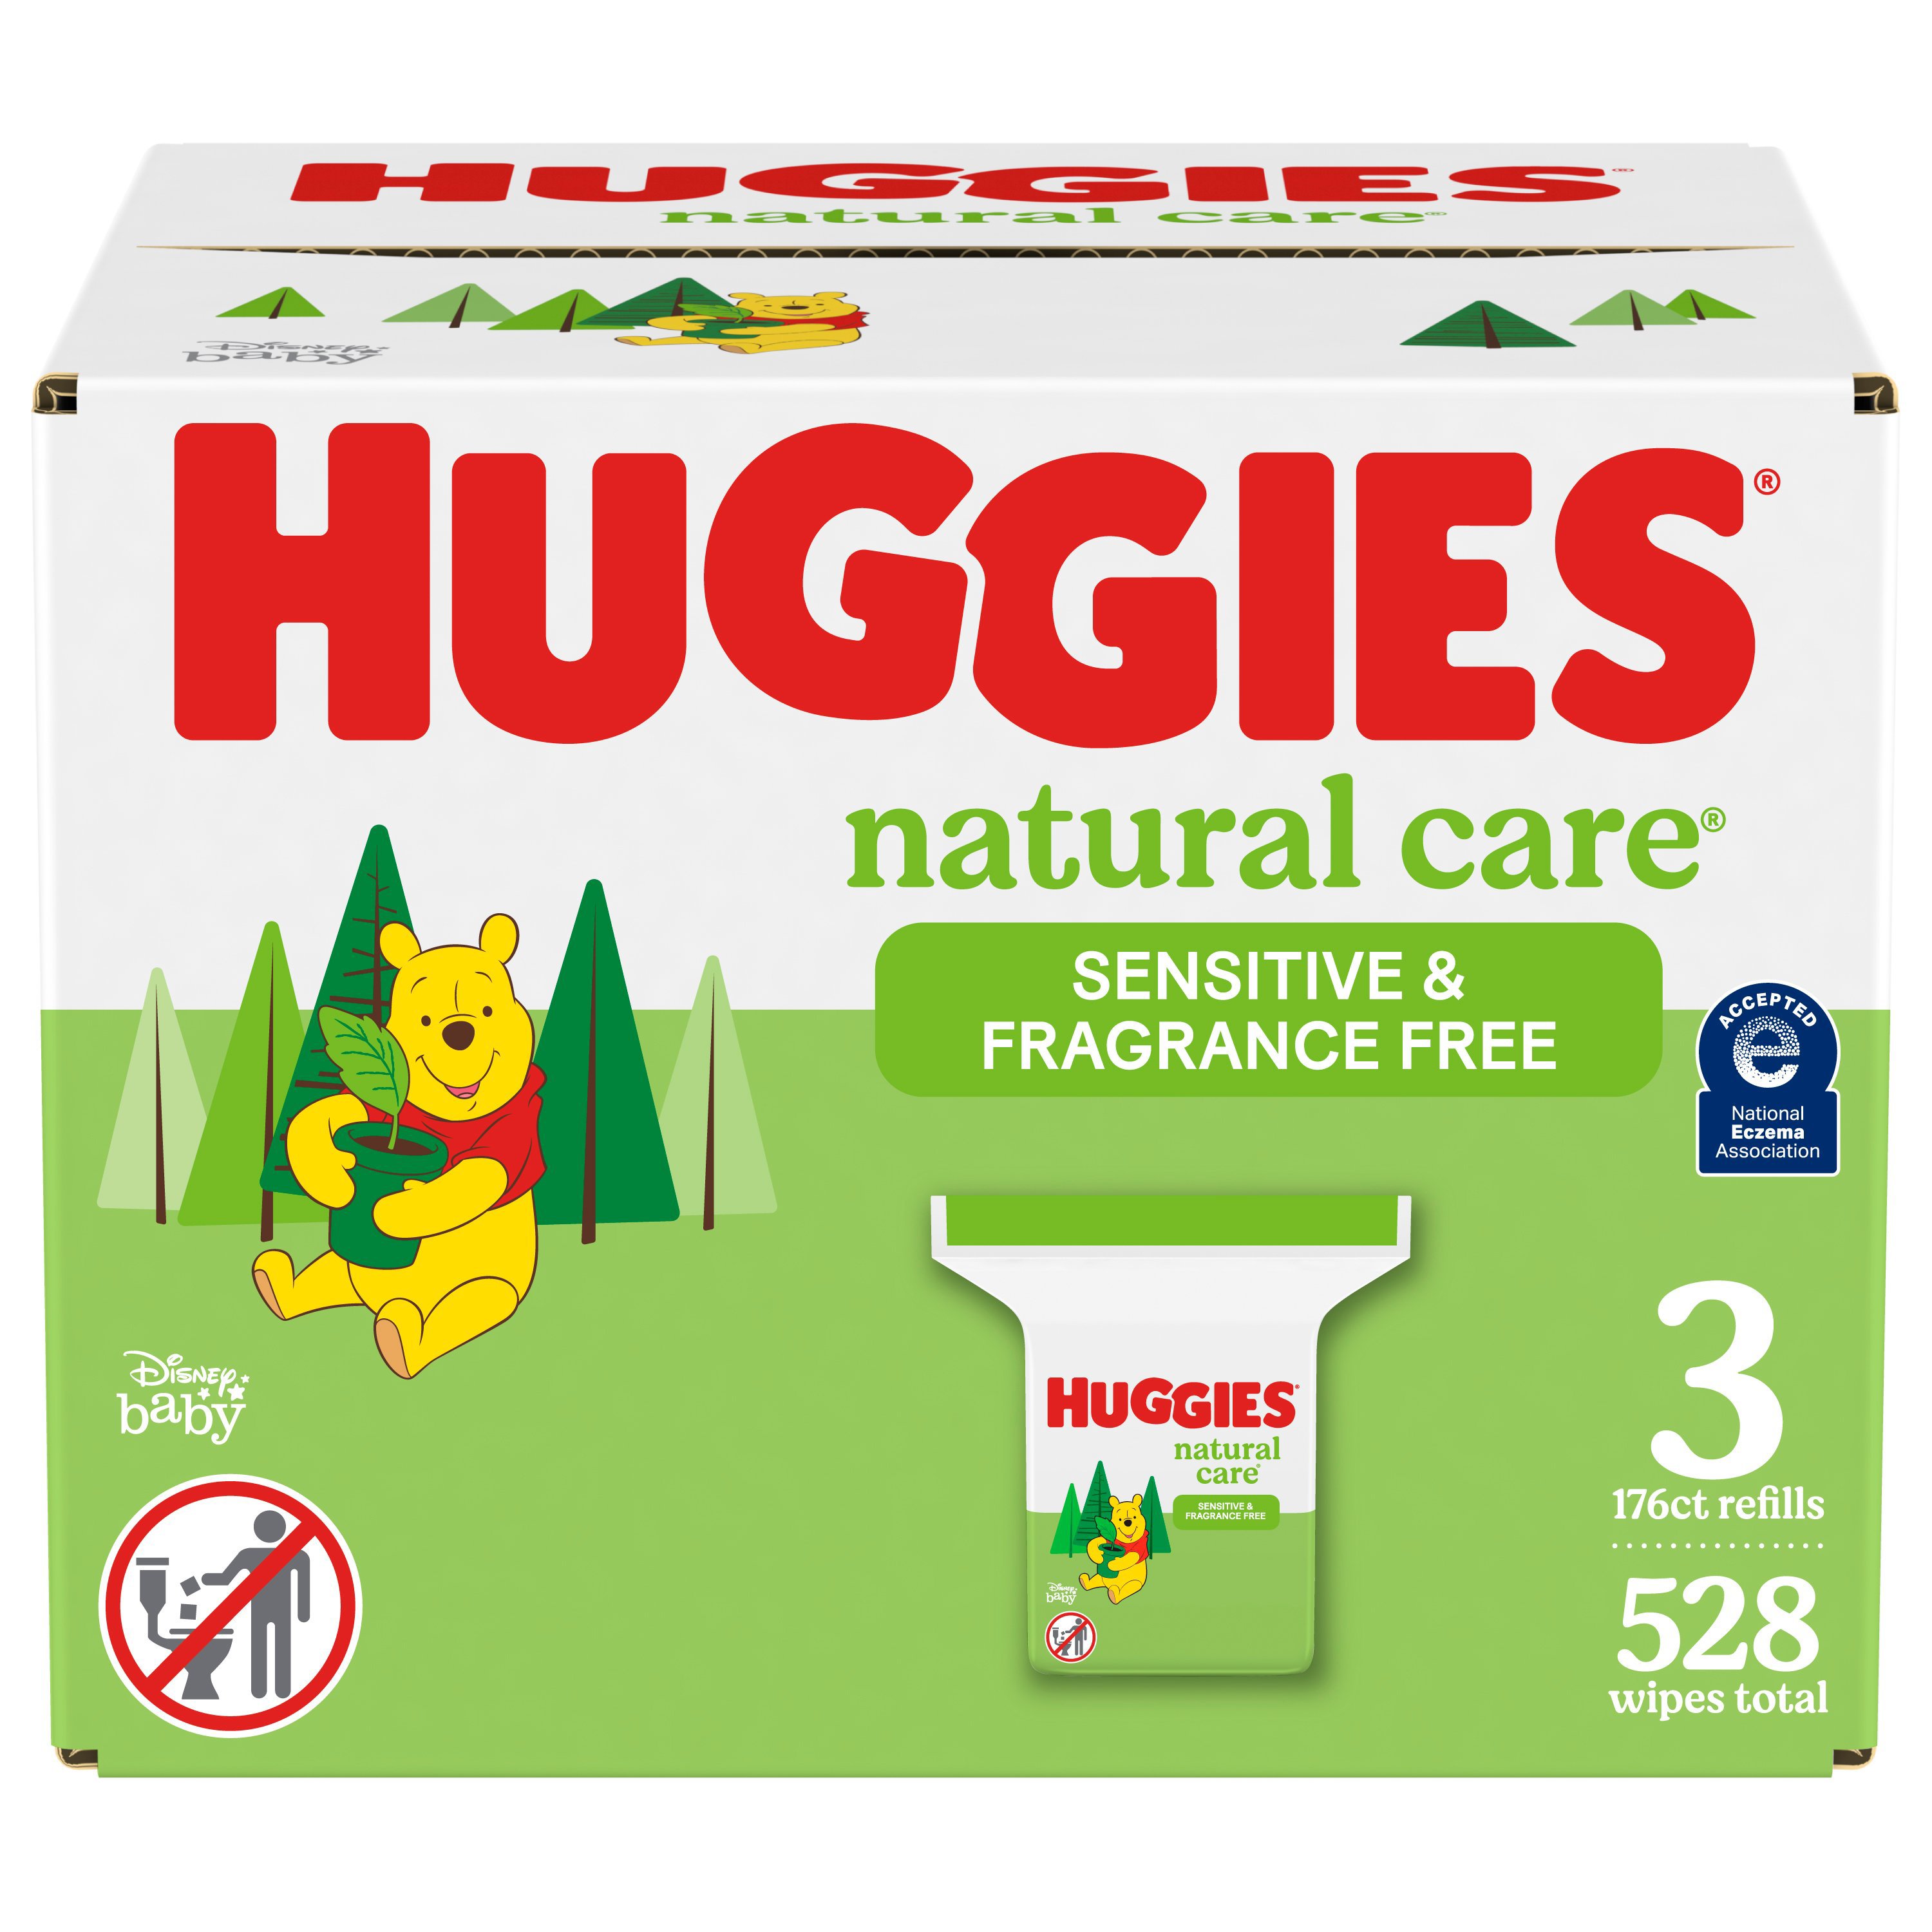 huggies natural